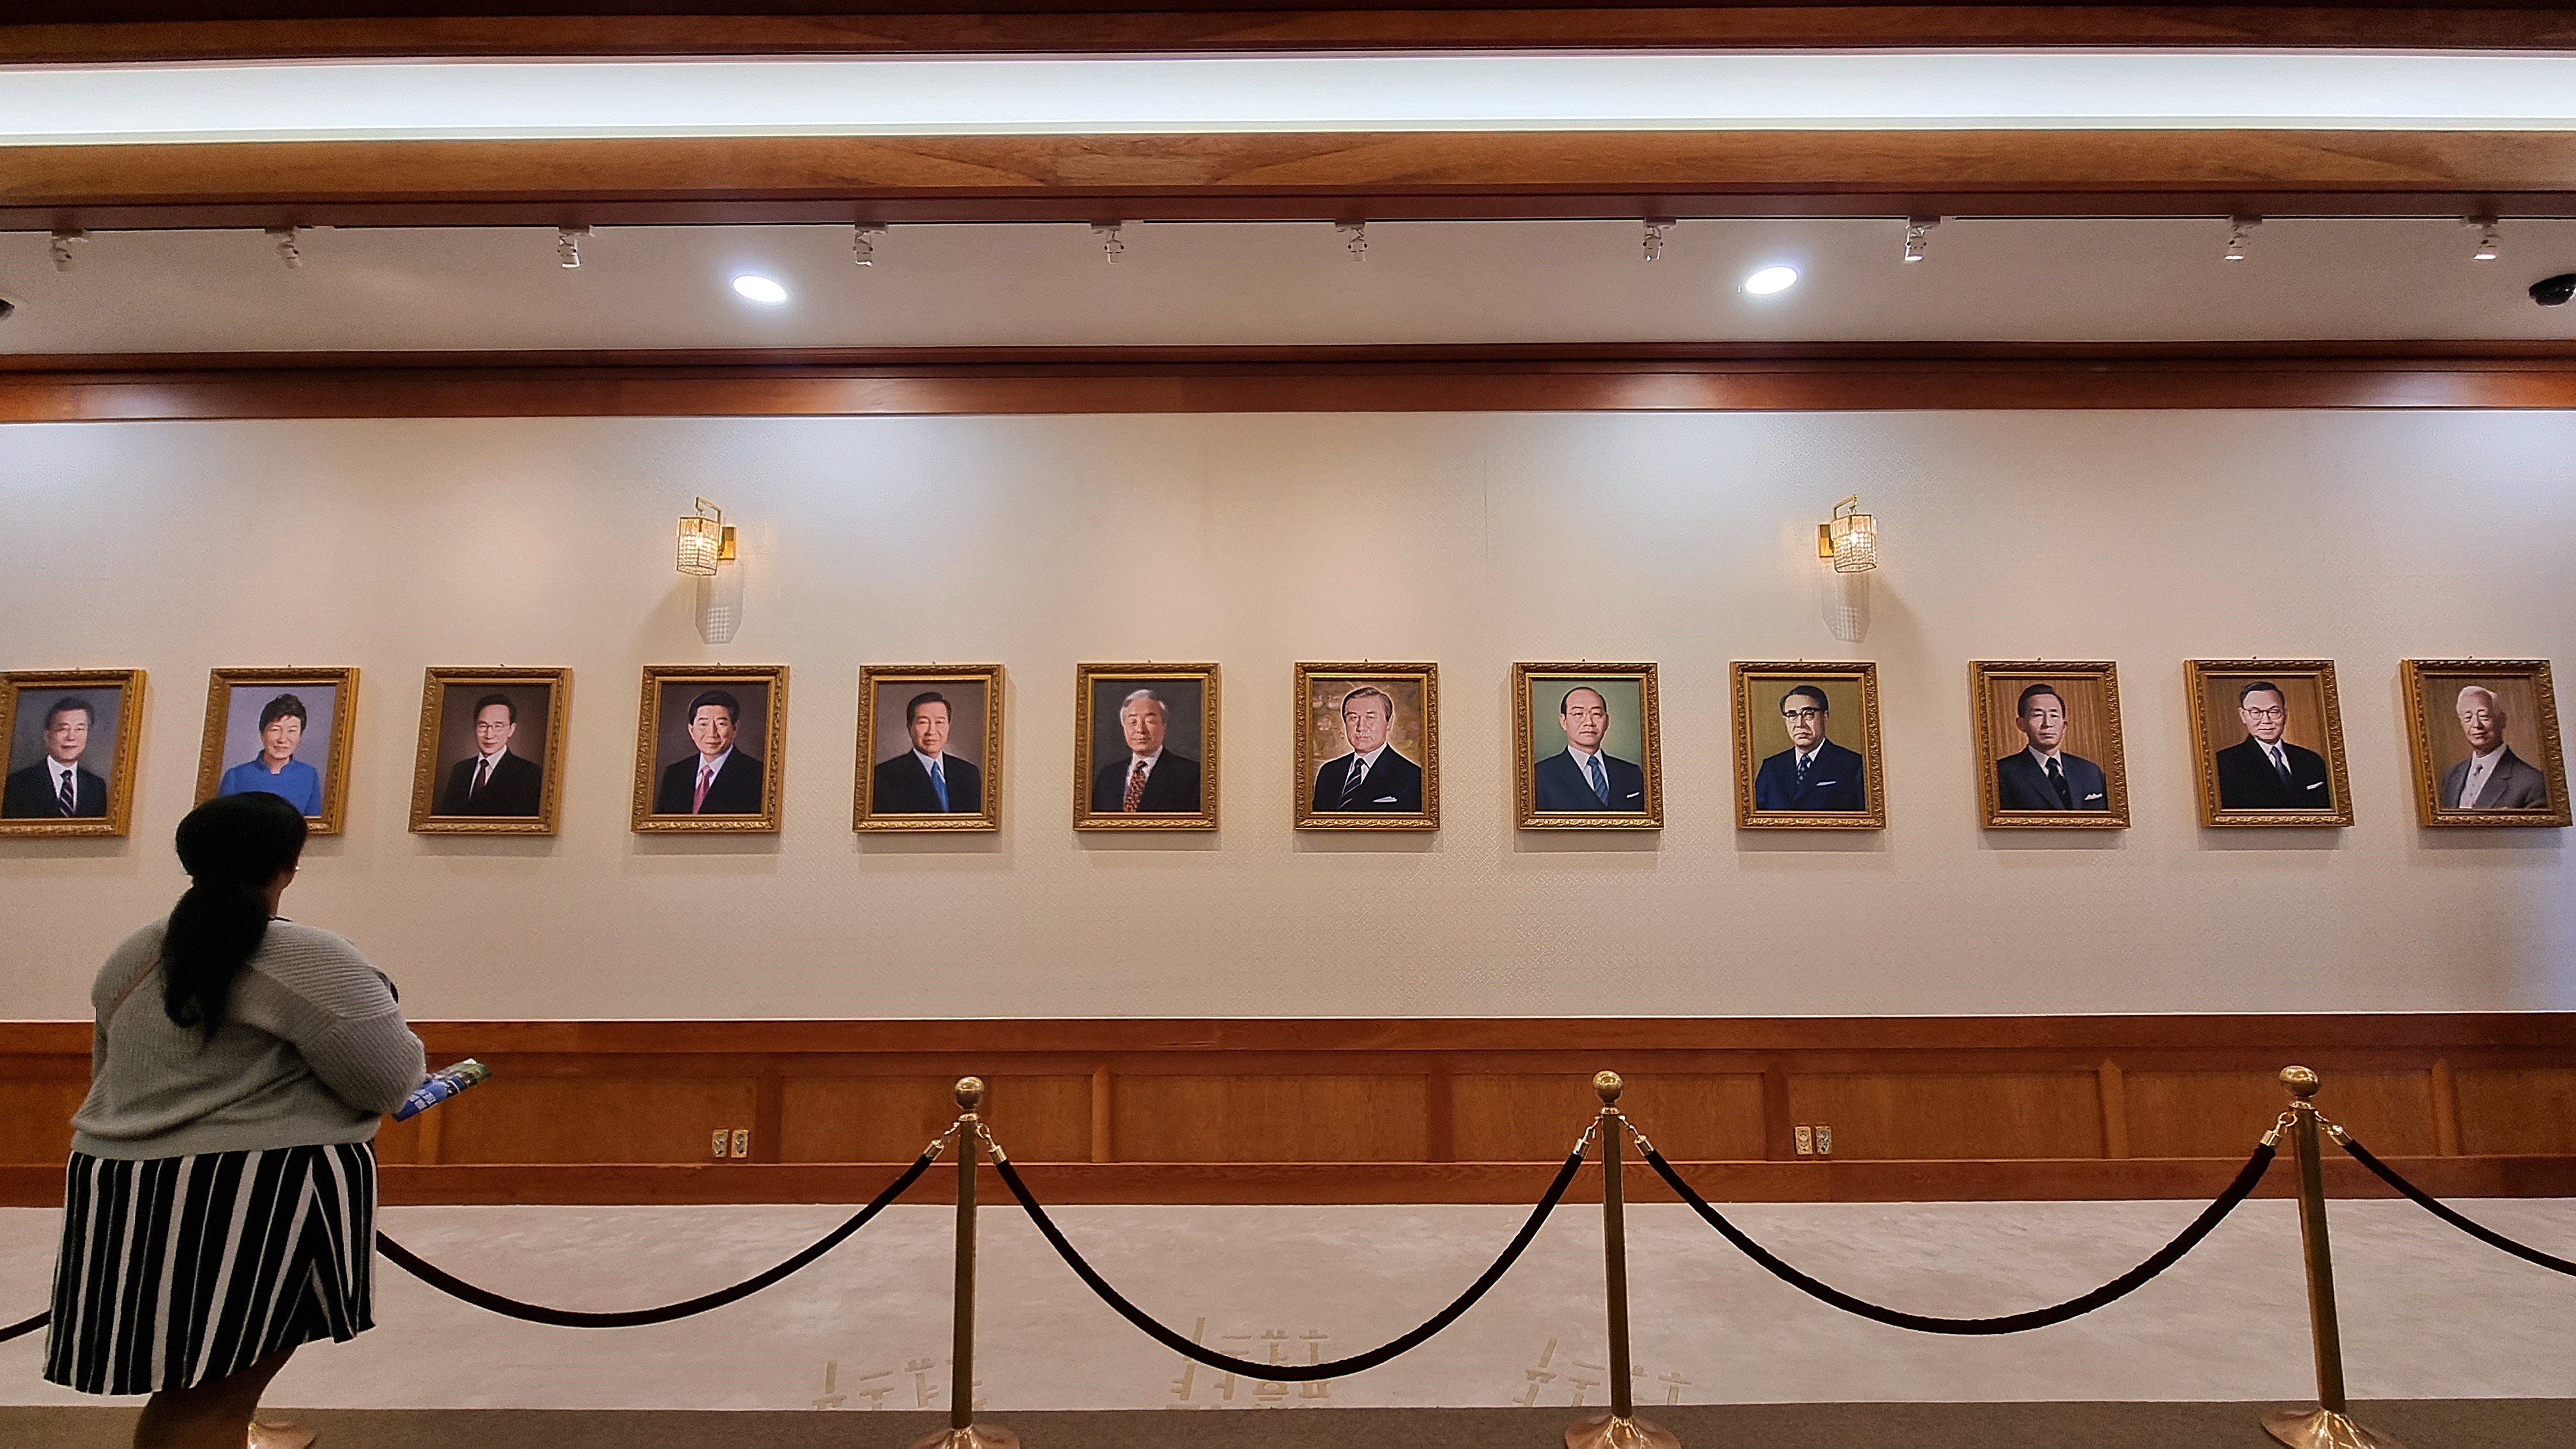 한 관람객이 본관에 걸려 있는 역대 대통령 12명의 초상화를 바라보고 있다.